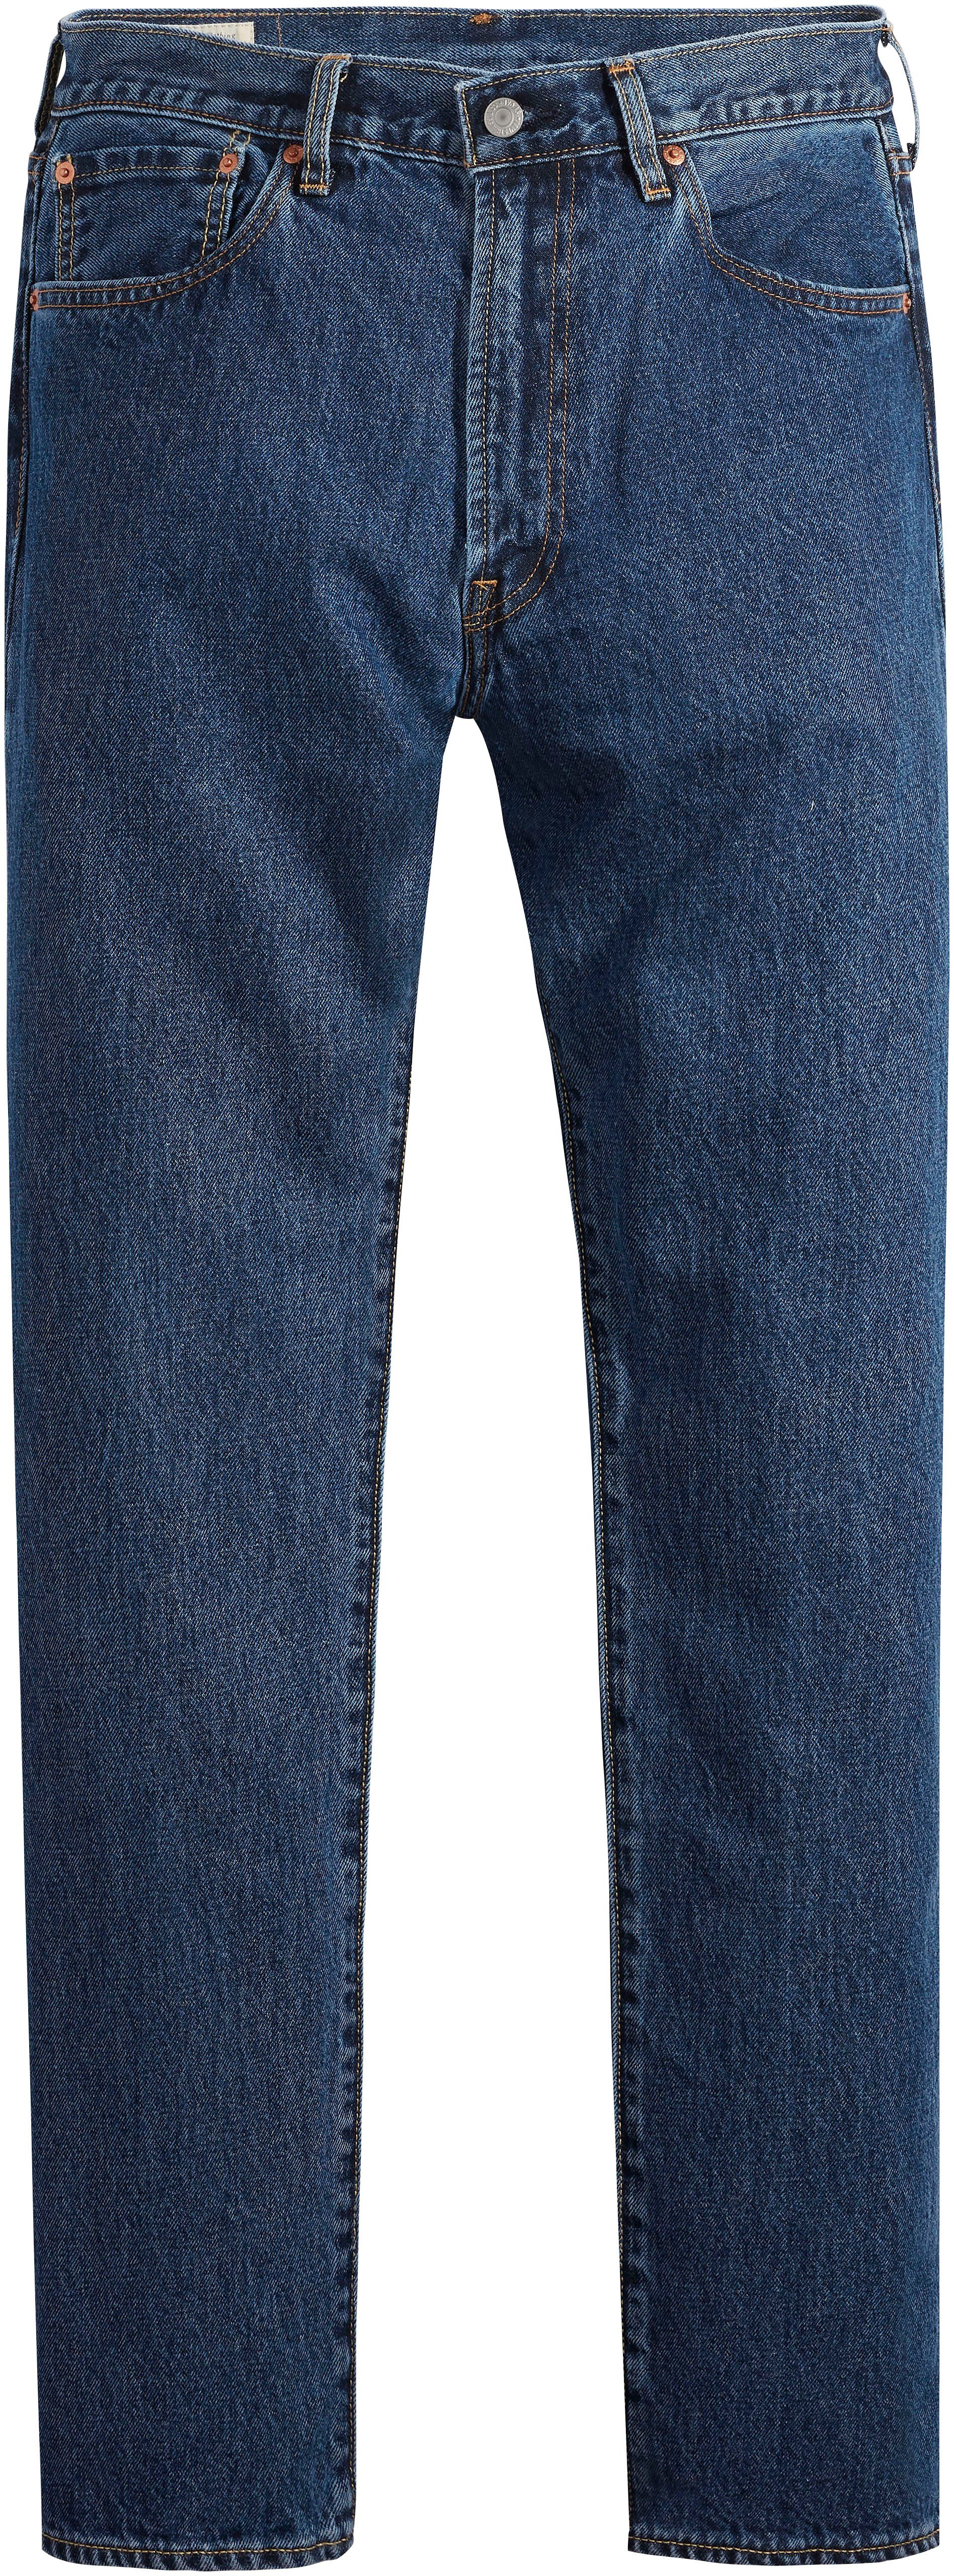 AUTHENTIC Levi's® 551Z Straight-Jeans Lederbadge mit WORM RUBBER